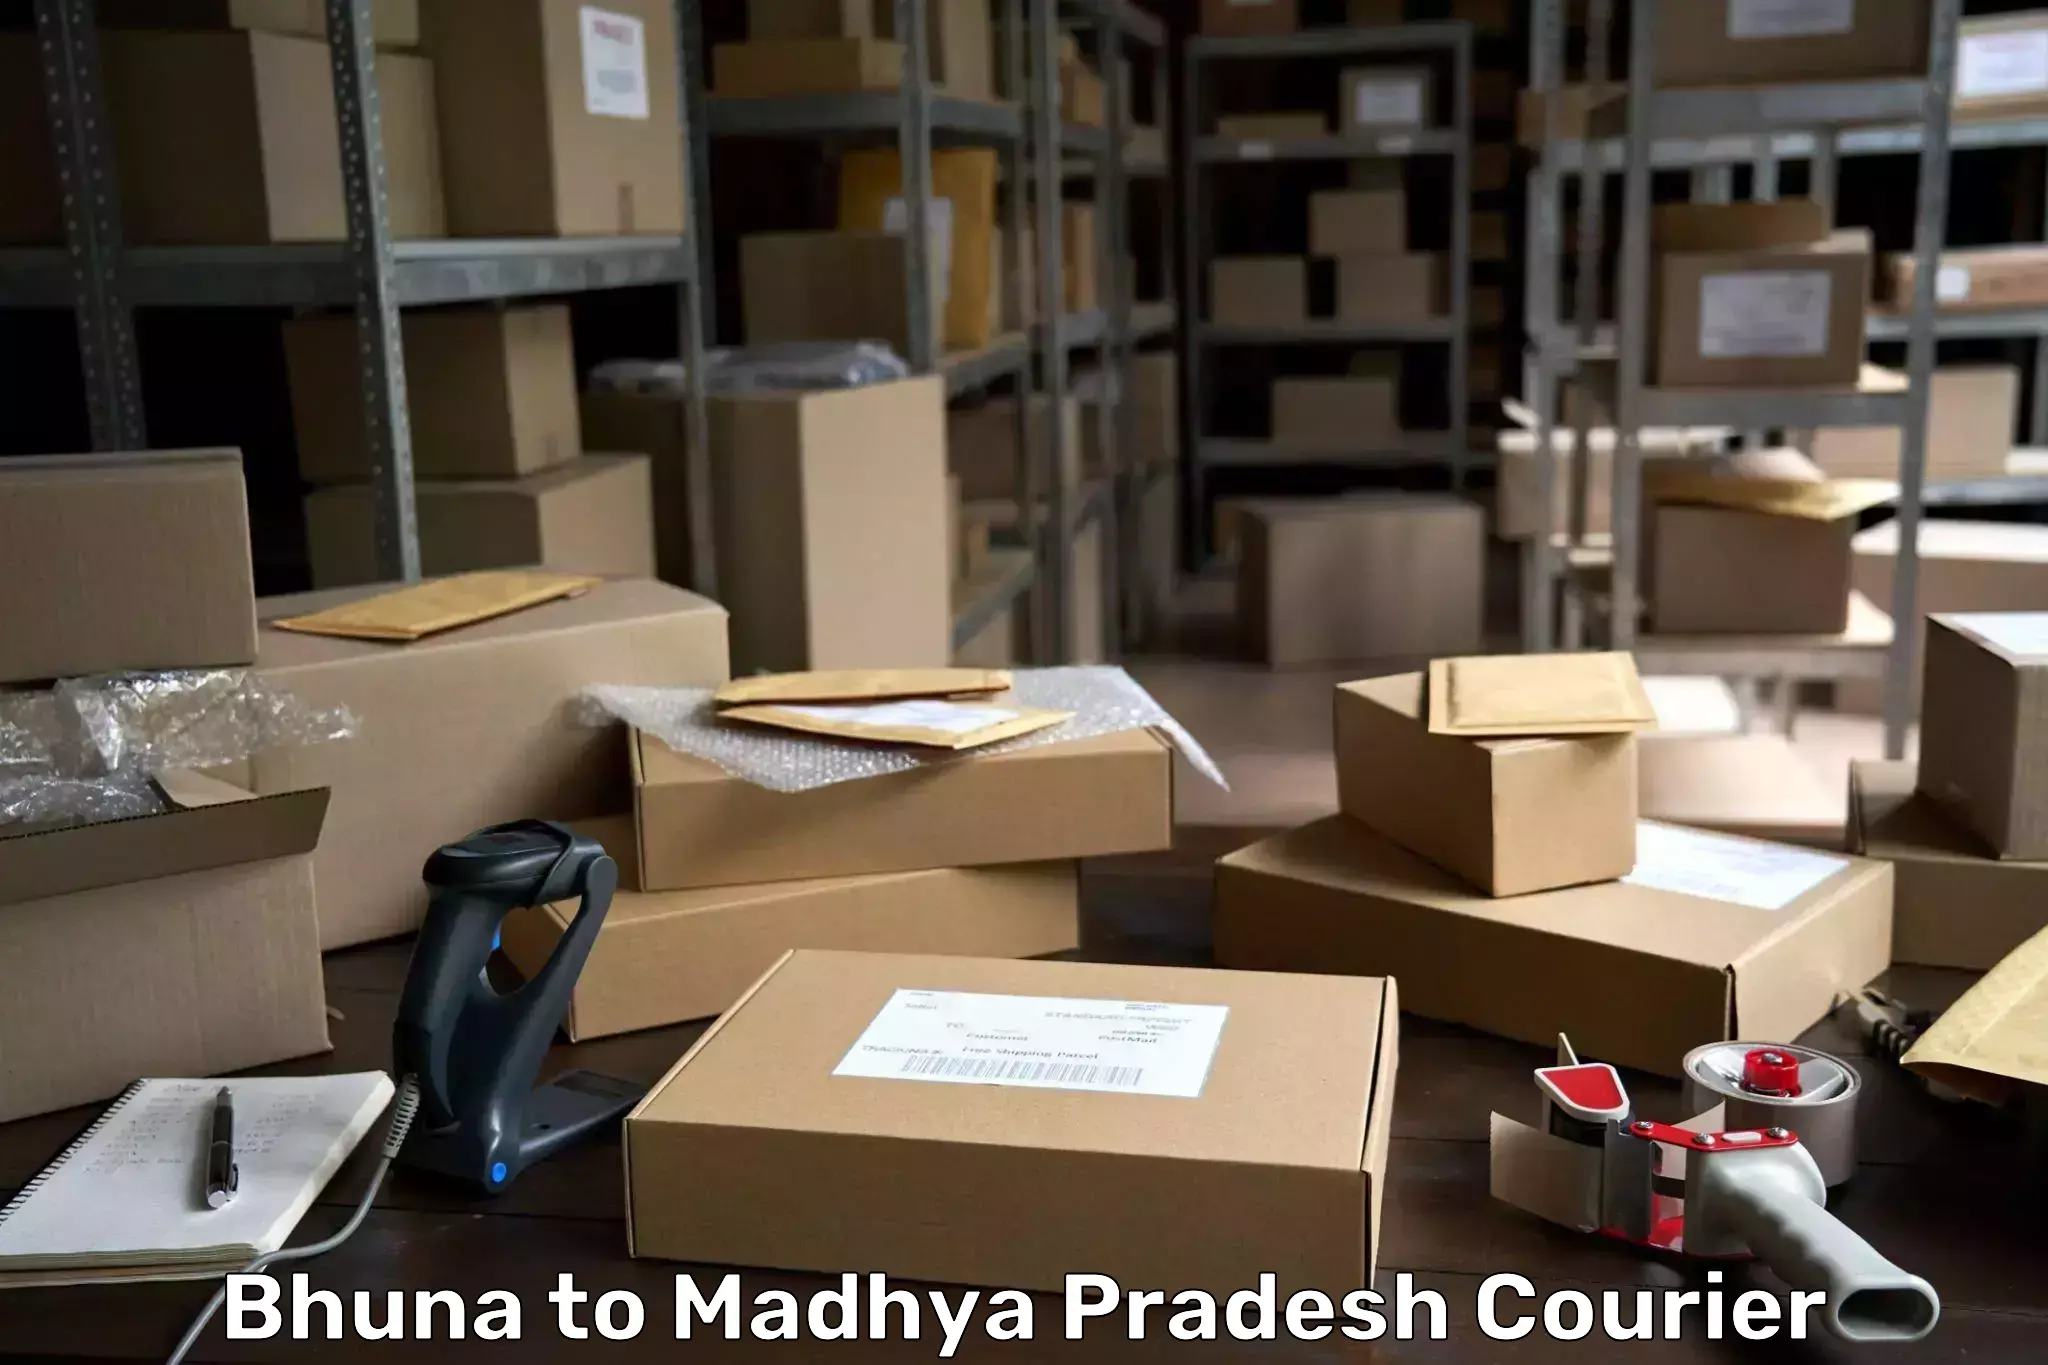 24/7 courier service in Bhuna to Madhya Pradesh